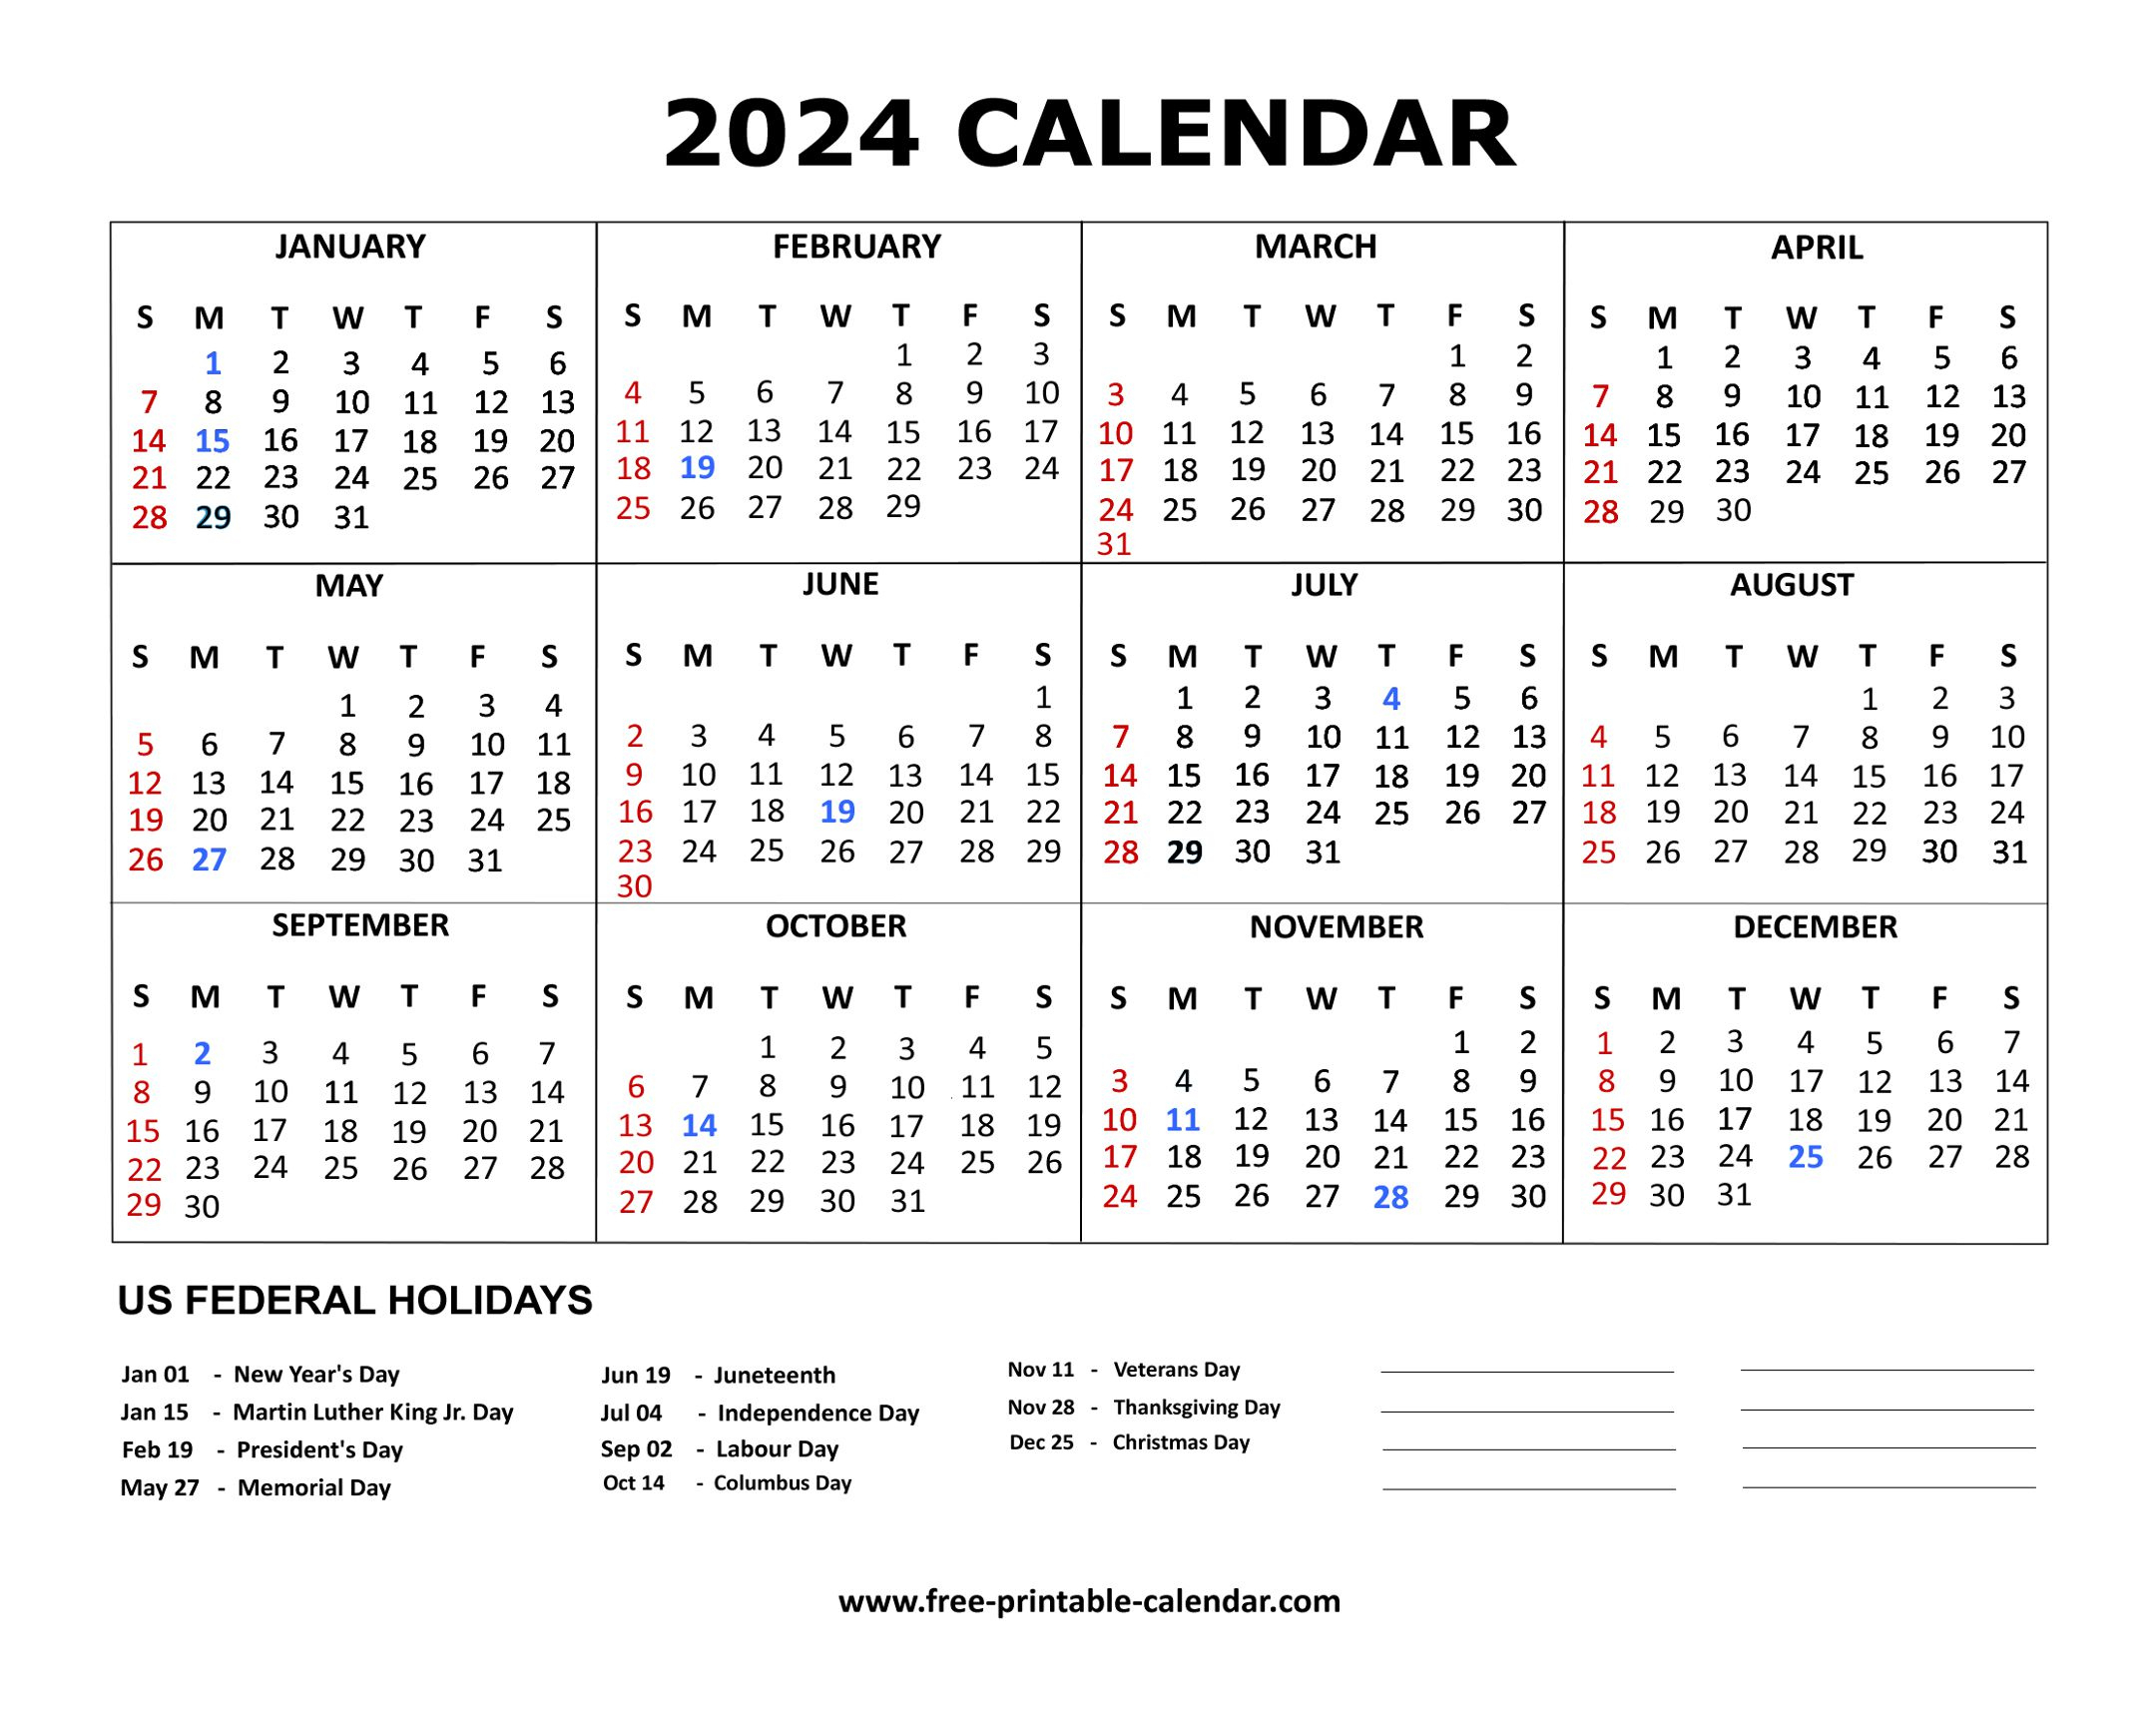 2024 Calendar | Free Printable Calendar 2024 No Download